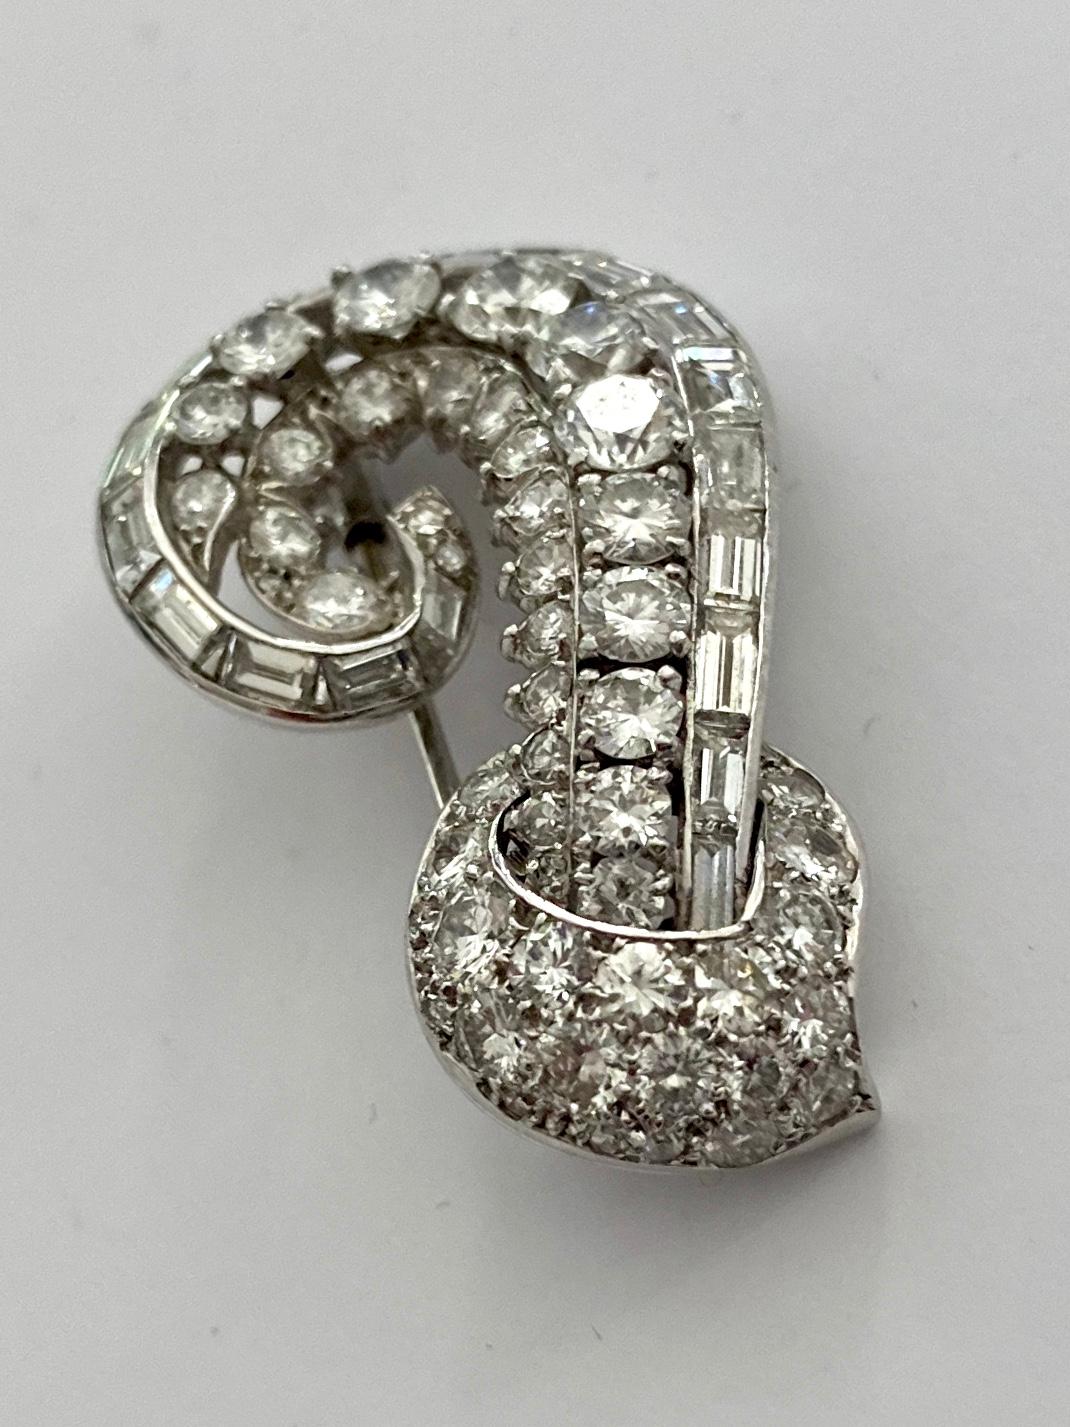 One (1) White Platinum Brooch, signed: Cartier London.
Clip mechanique, 
set with:
36 brillant cut daimonds 3.00ct  VVS/VS -D-E
10 single cut diamaonds 0.20ct  VVS/VS - D-E
19 baquette cut diamonds 2.00 ct  VVS/VS - D-E
weight: 10.43